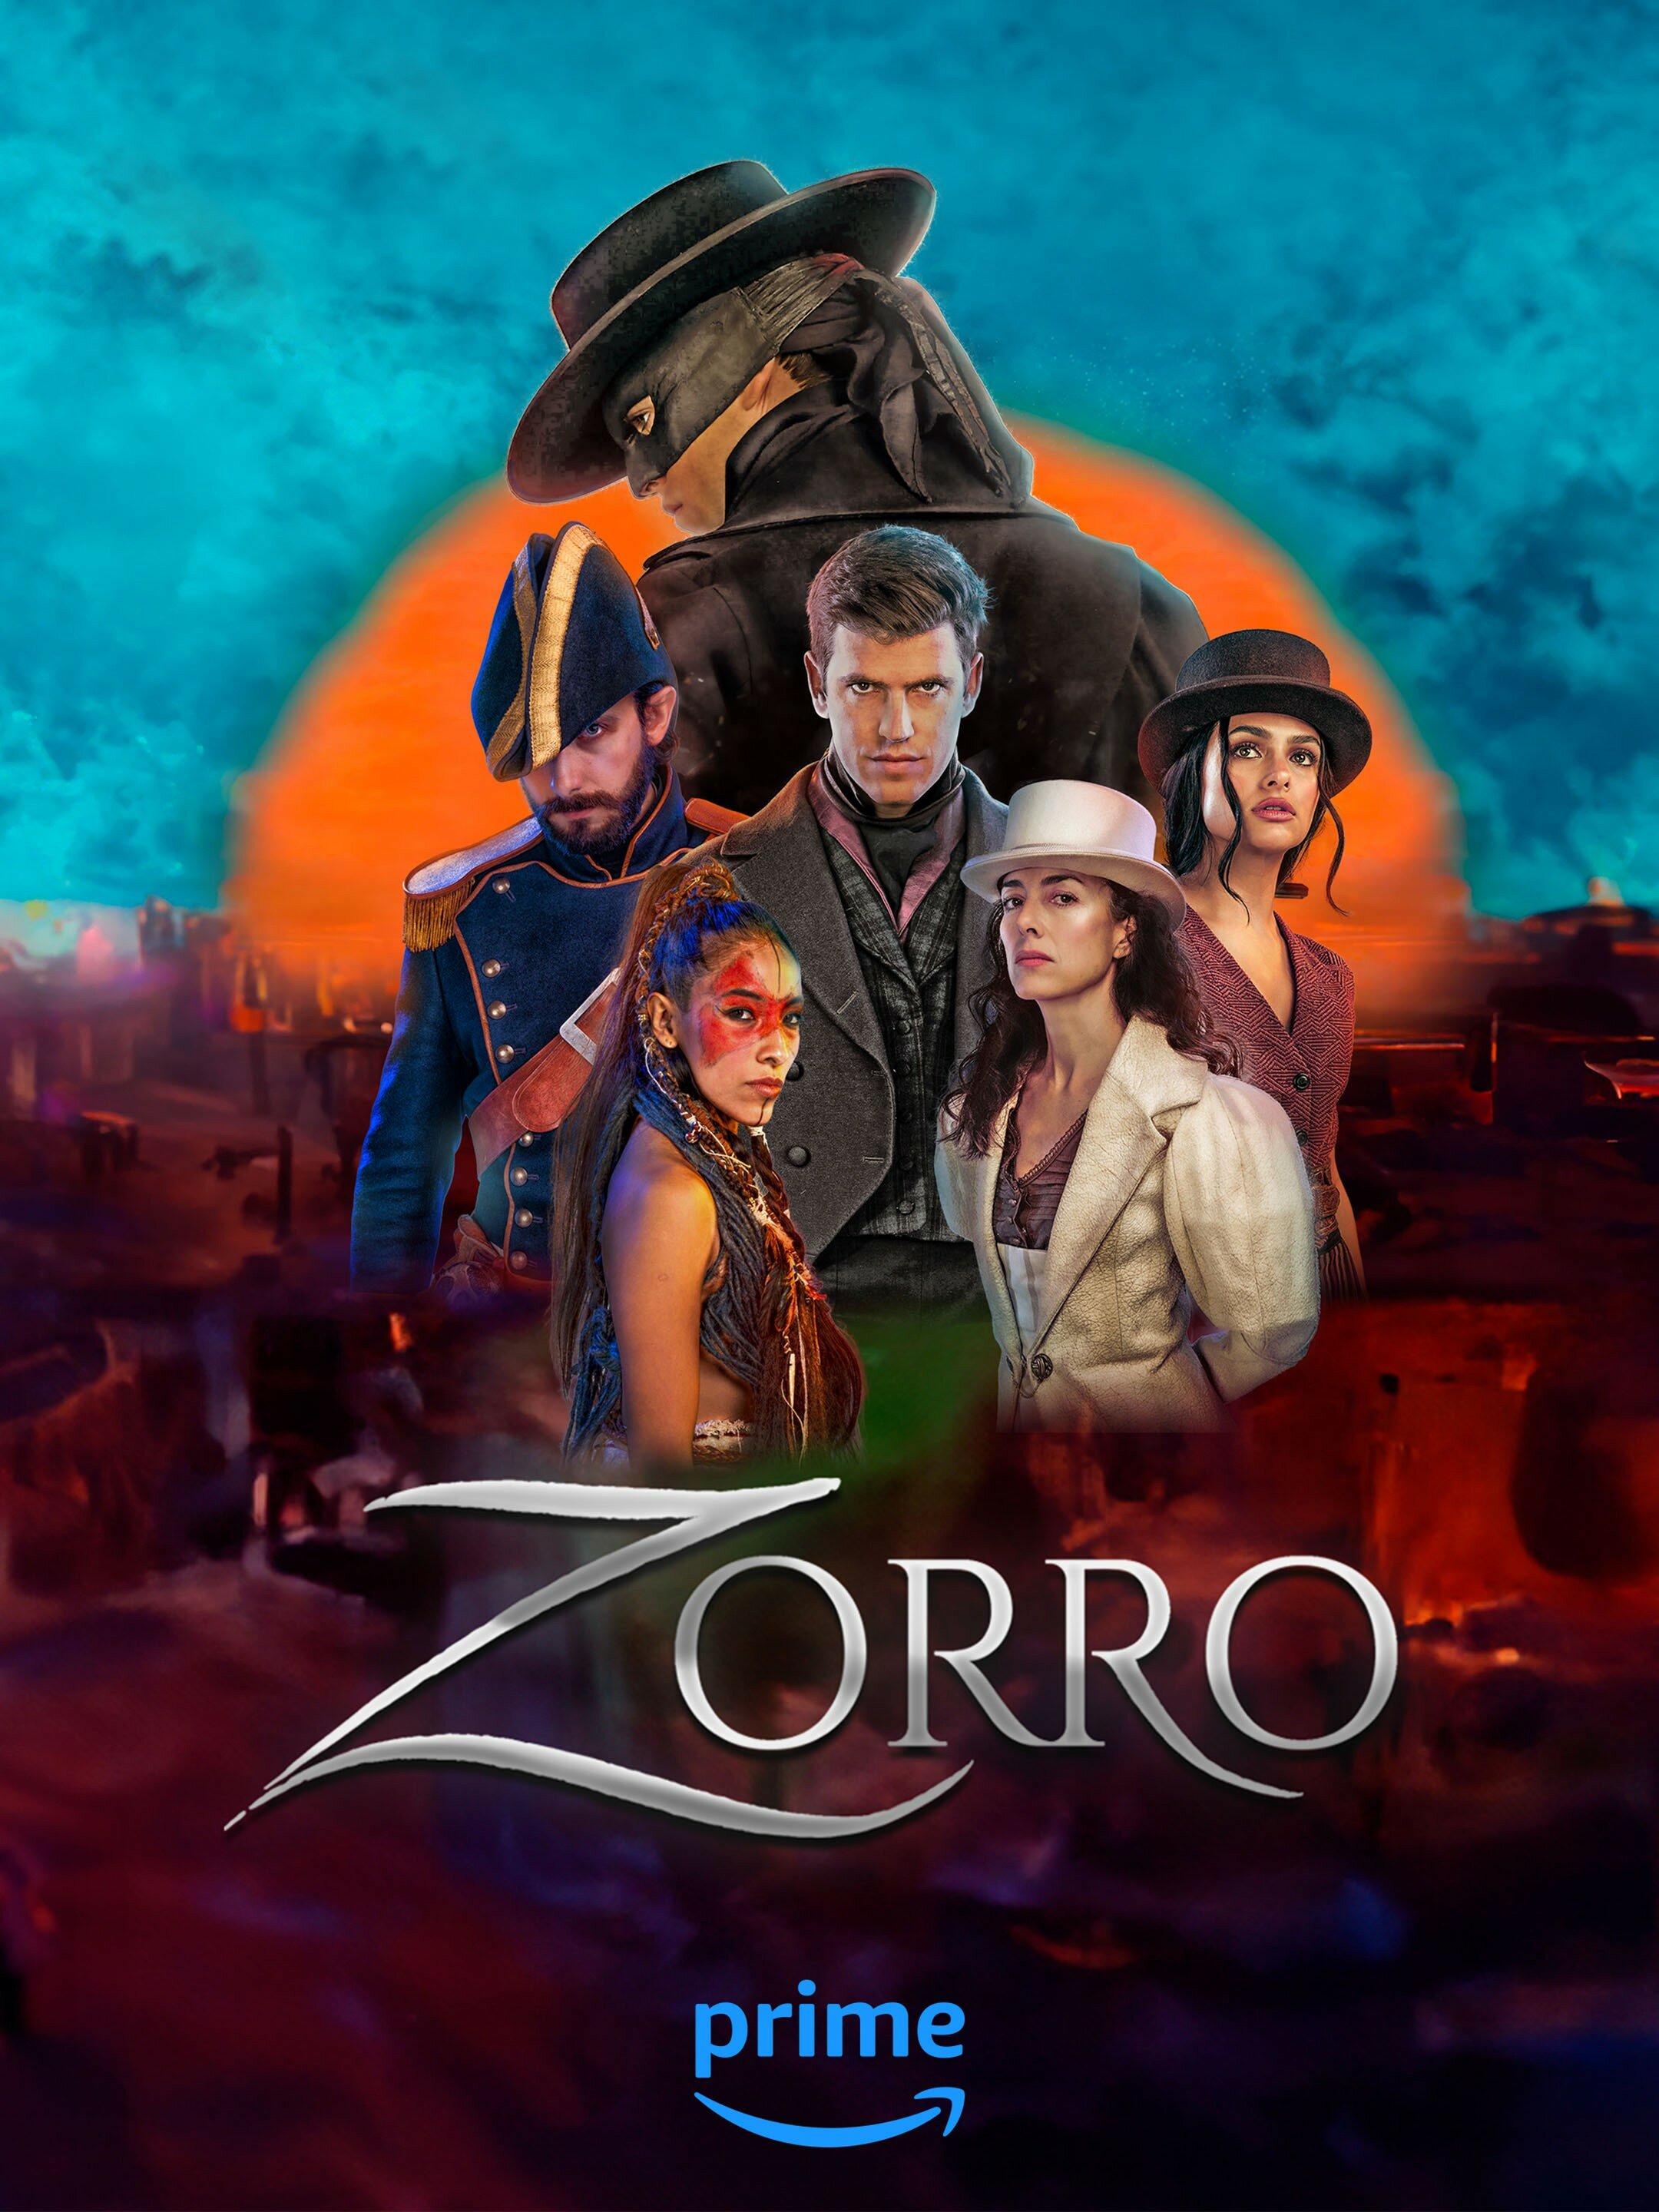 Zorro ne zaman